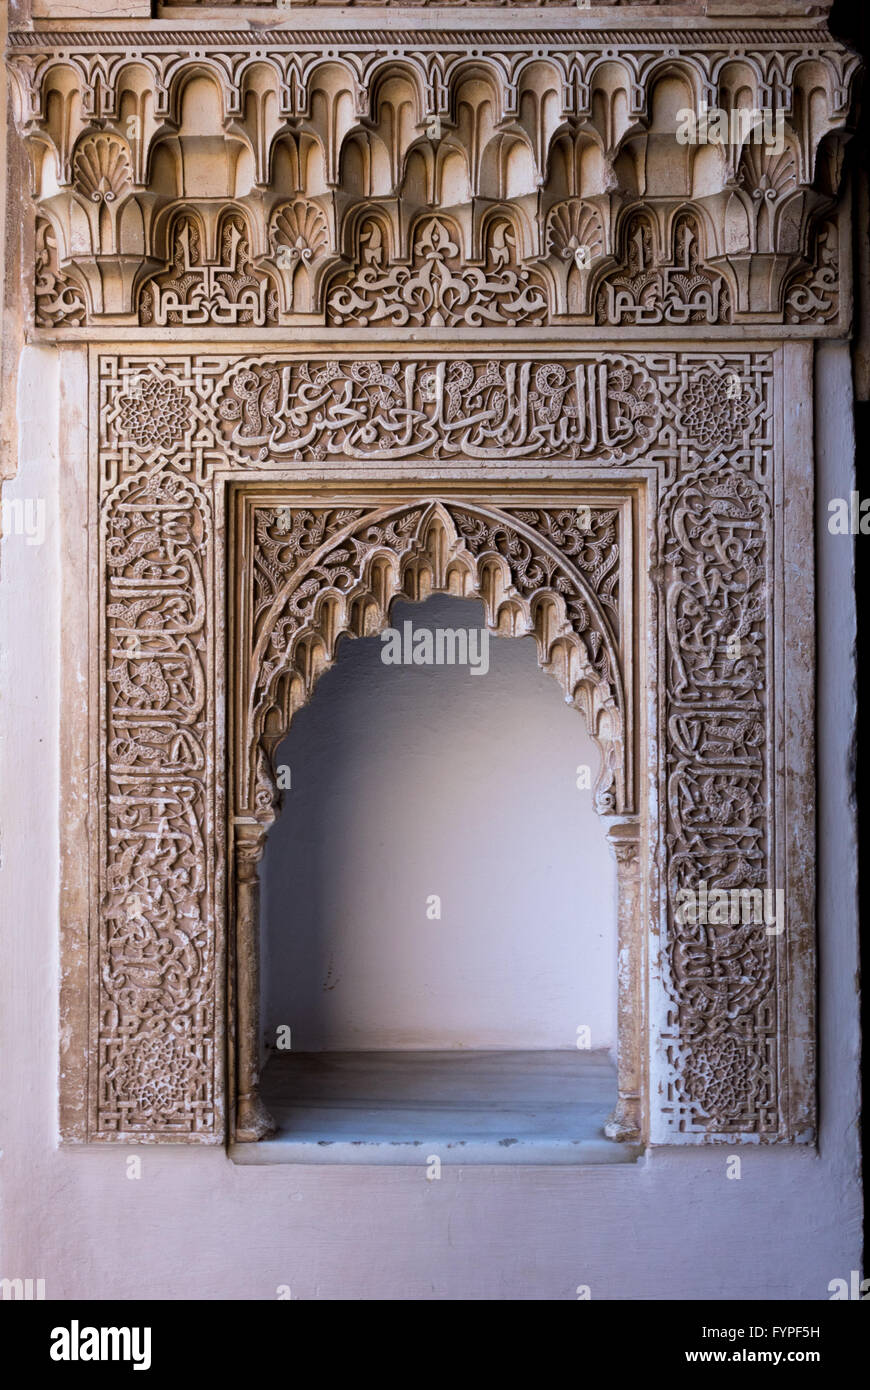 Arabic inscribed niche in Alhambra palace Granada Stock Photo